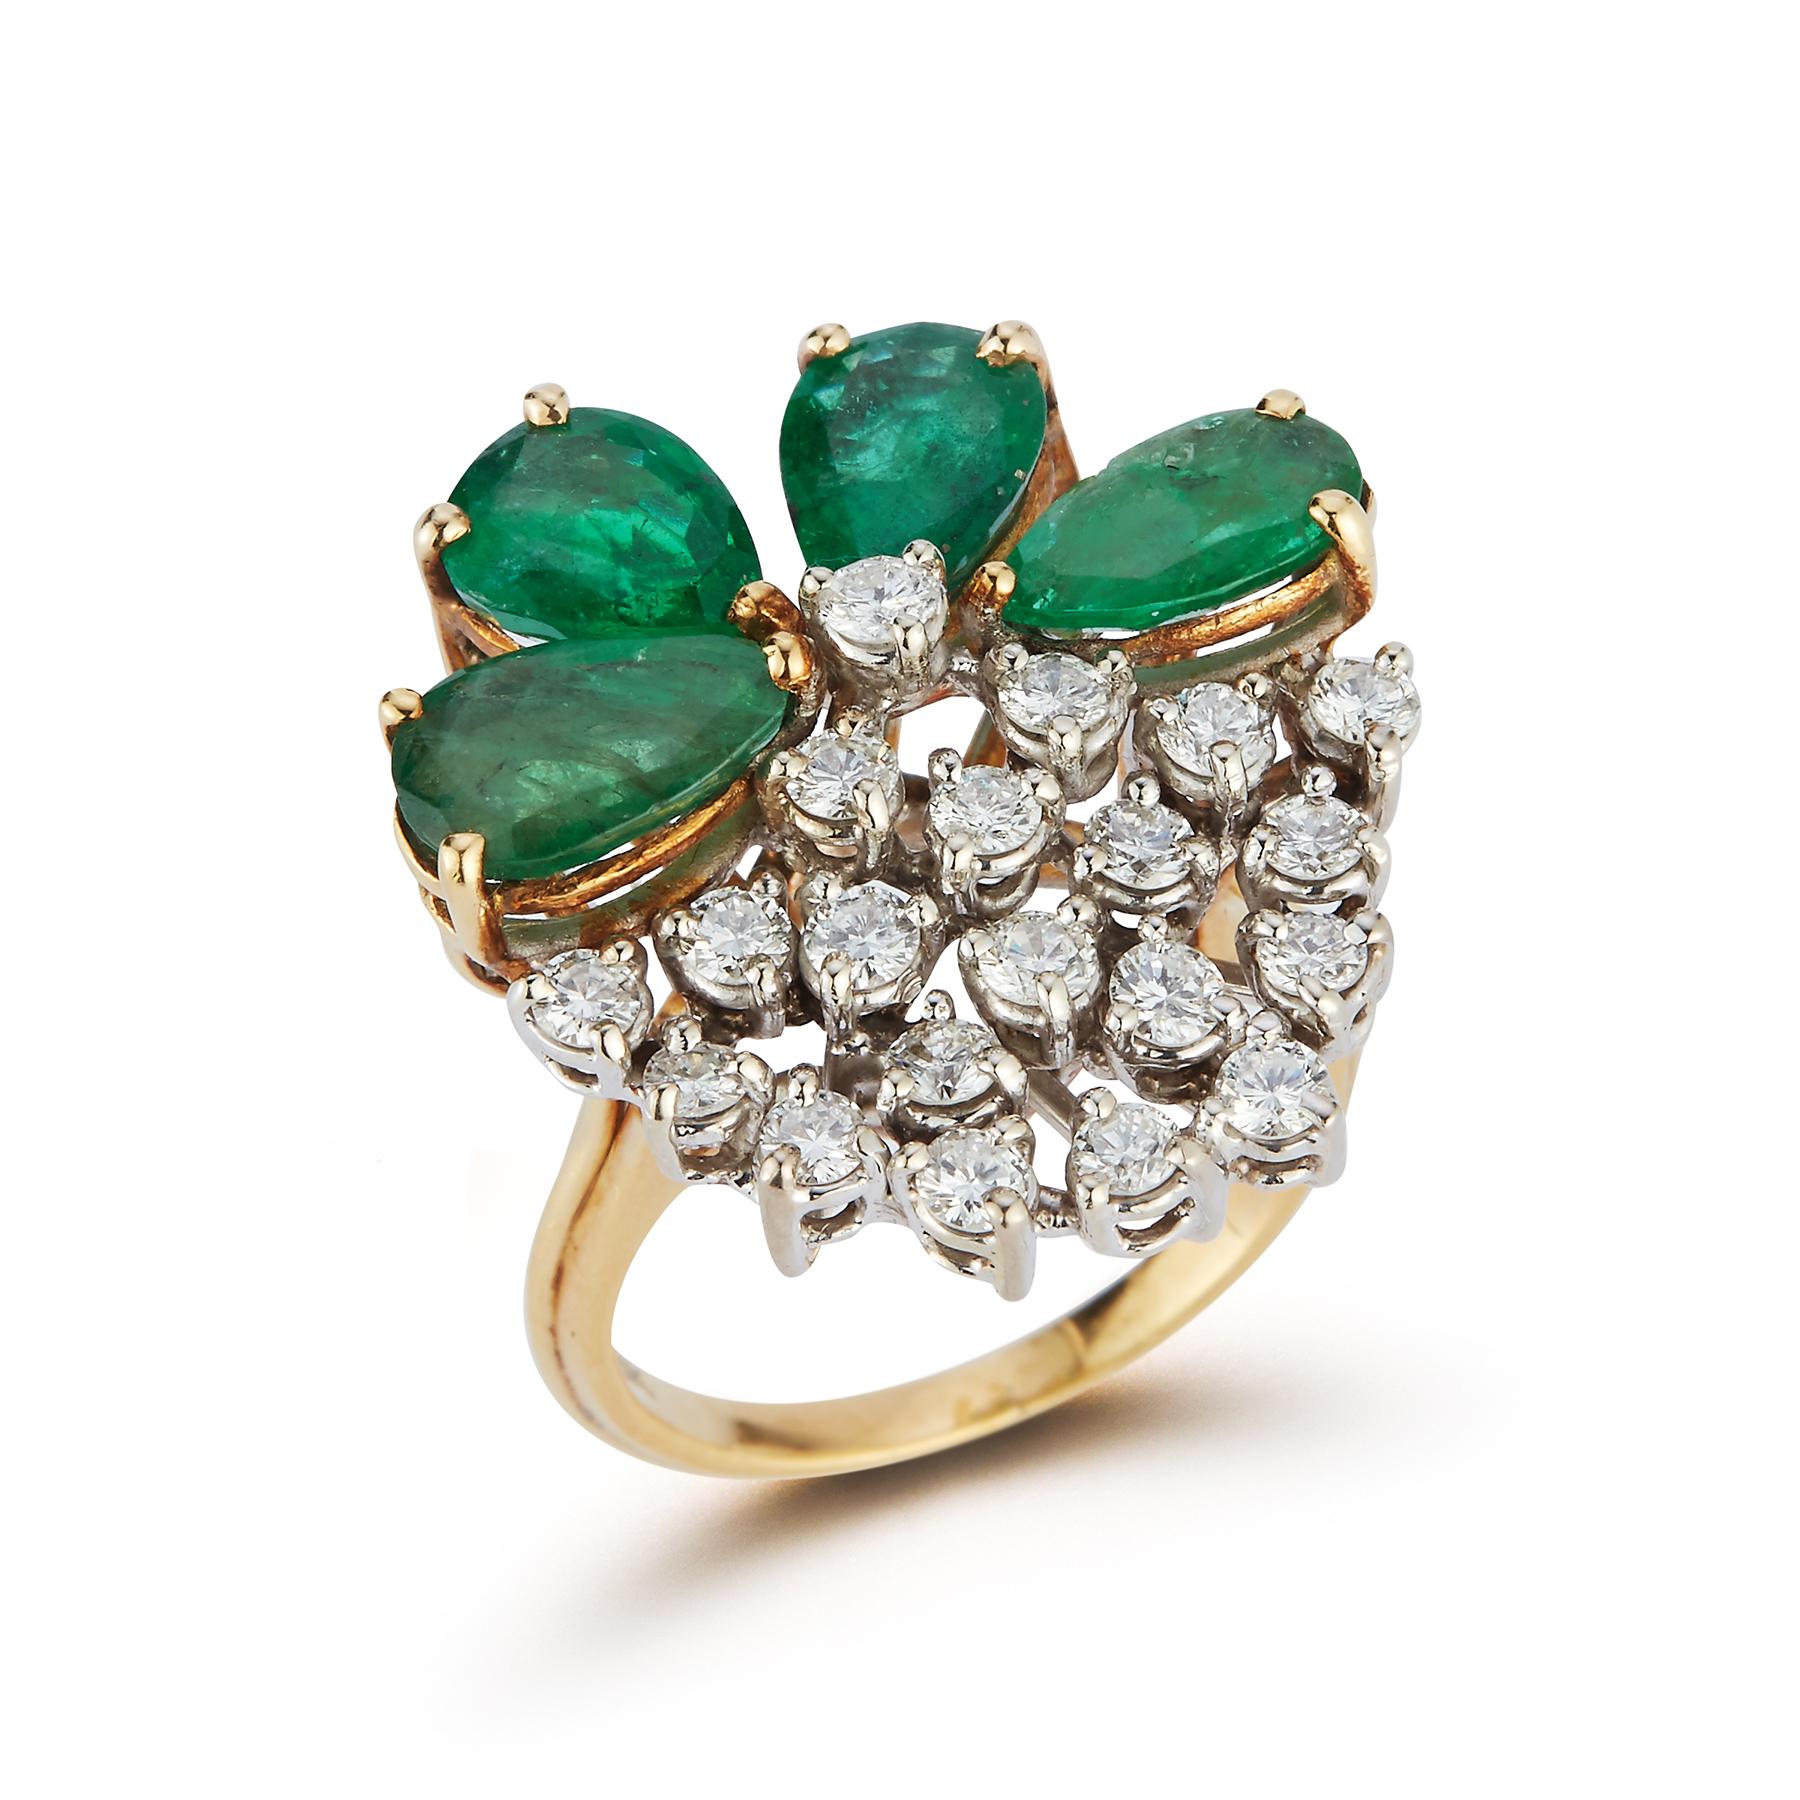 Cocktailring mit Smaragd und Diamant in Birnenform

18k Gelbgold Ring mit 4 birnenförmigen Smaragden ca  9.80 Karat mit ca. 20 runden Diamanten   1.40 Karat

Ringgröße: 5.50 
Kostenfrei anpassbar

Gewicht: 8,7 Gramm